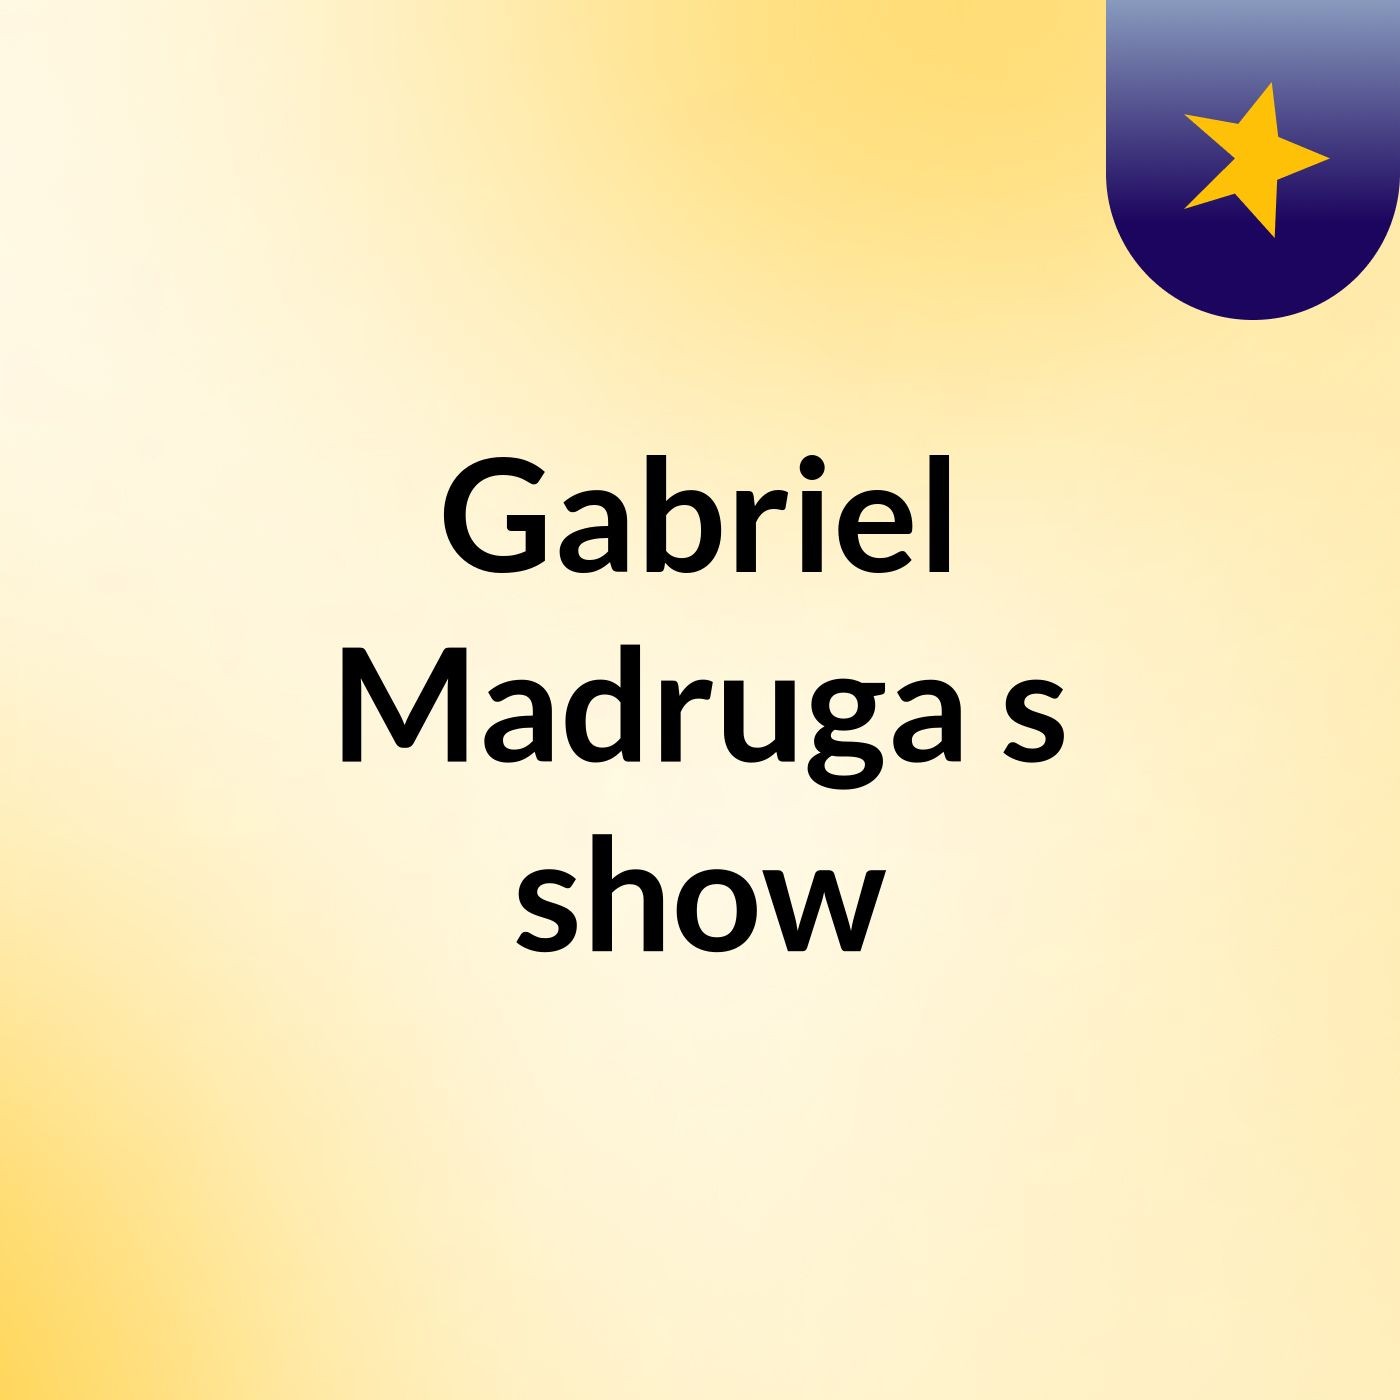 Gabriel Madruga's show